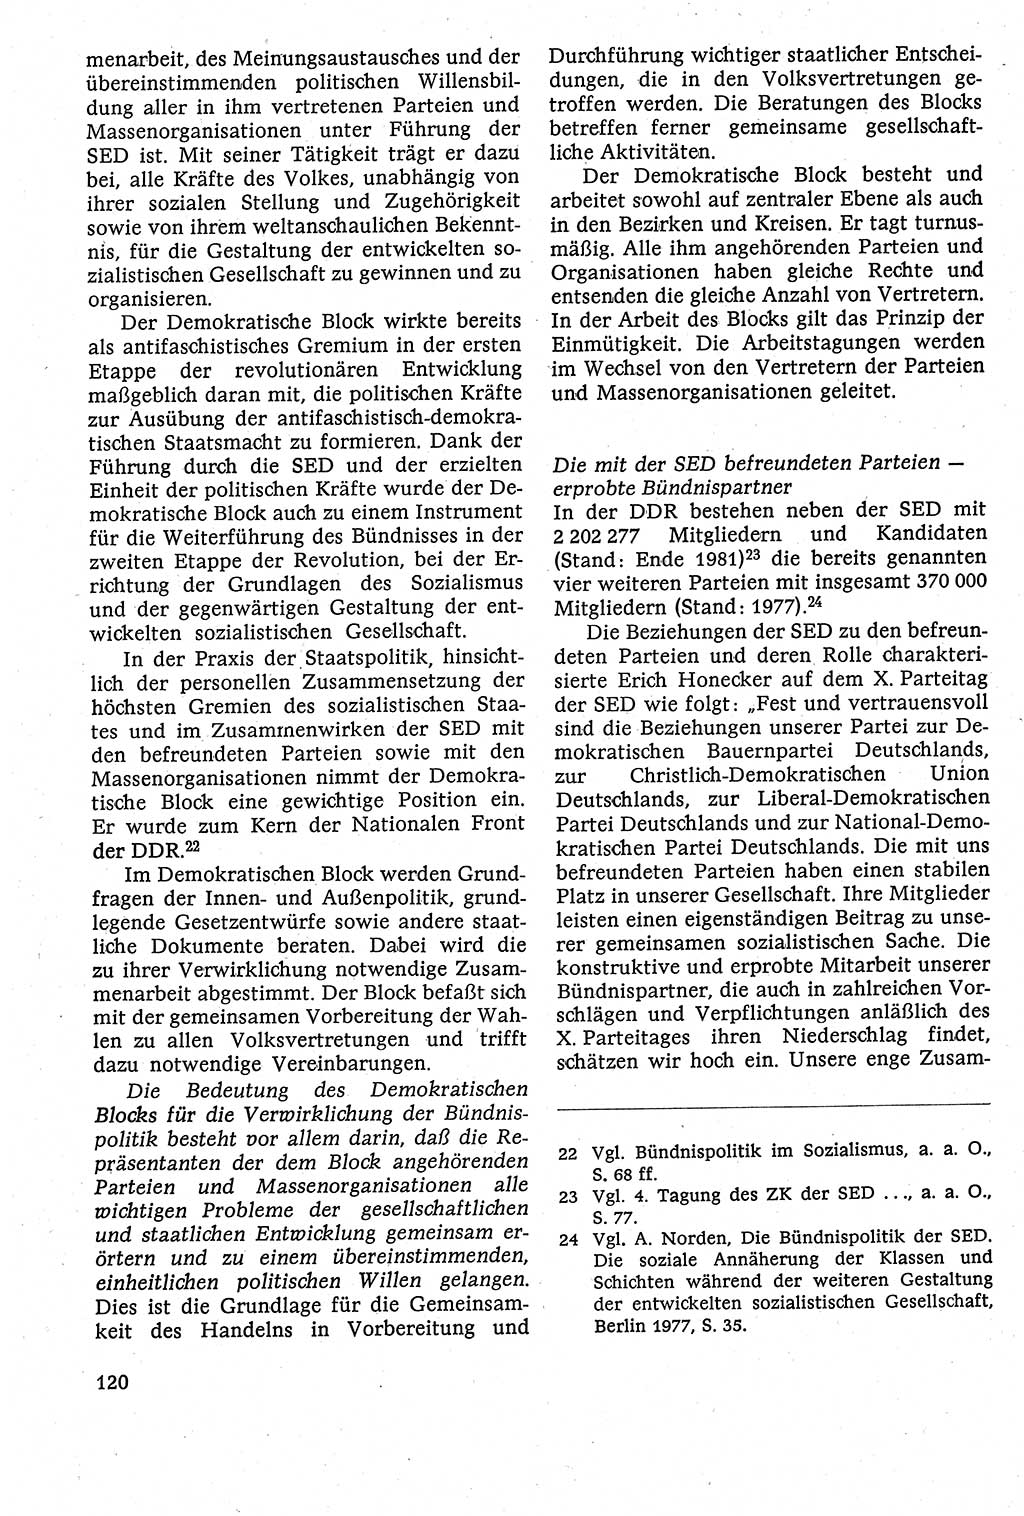 Staatsrecht der DDR [Deutsche Demokratische Republik (DDR)], Lehrbuch 1984, Seite 120 (St.-R. DDR Lb. 1984, S. 120)